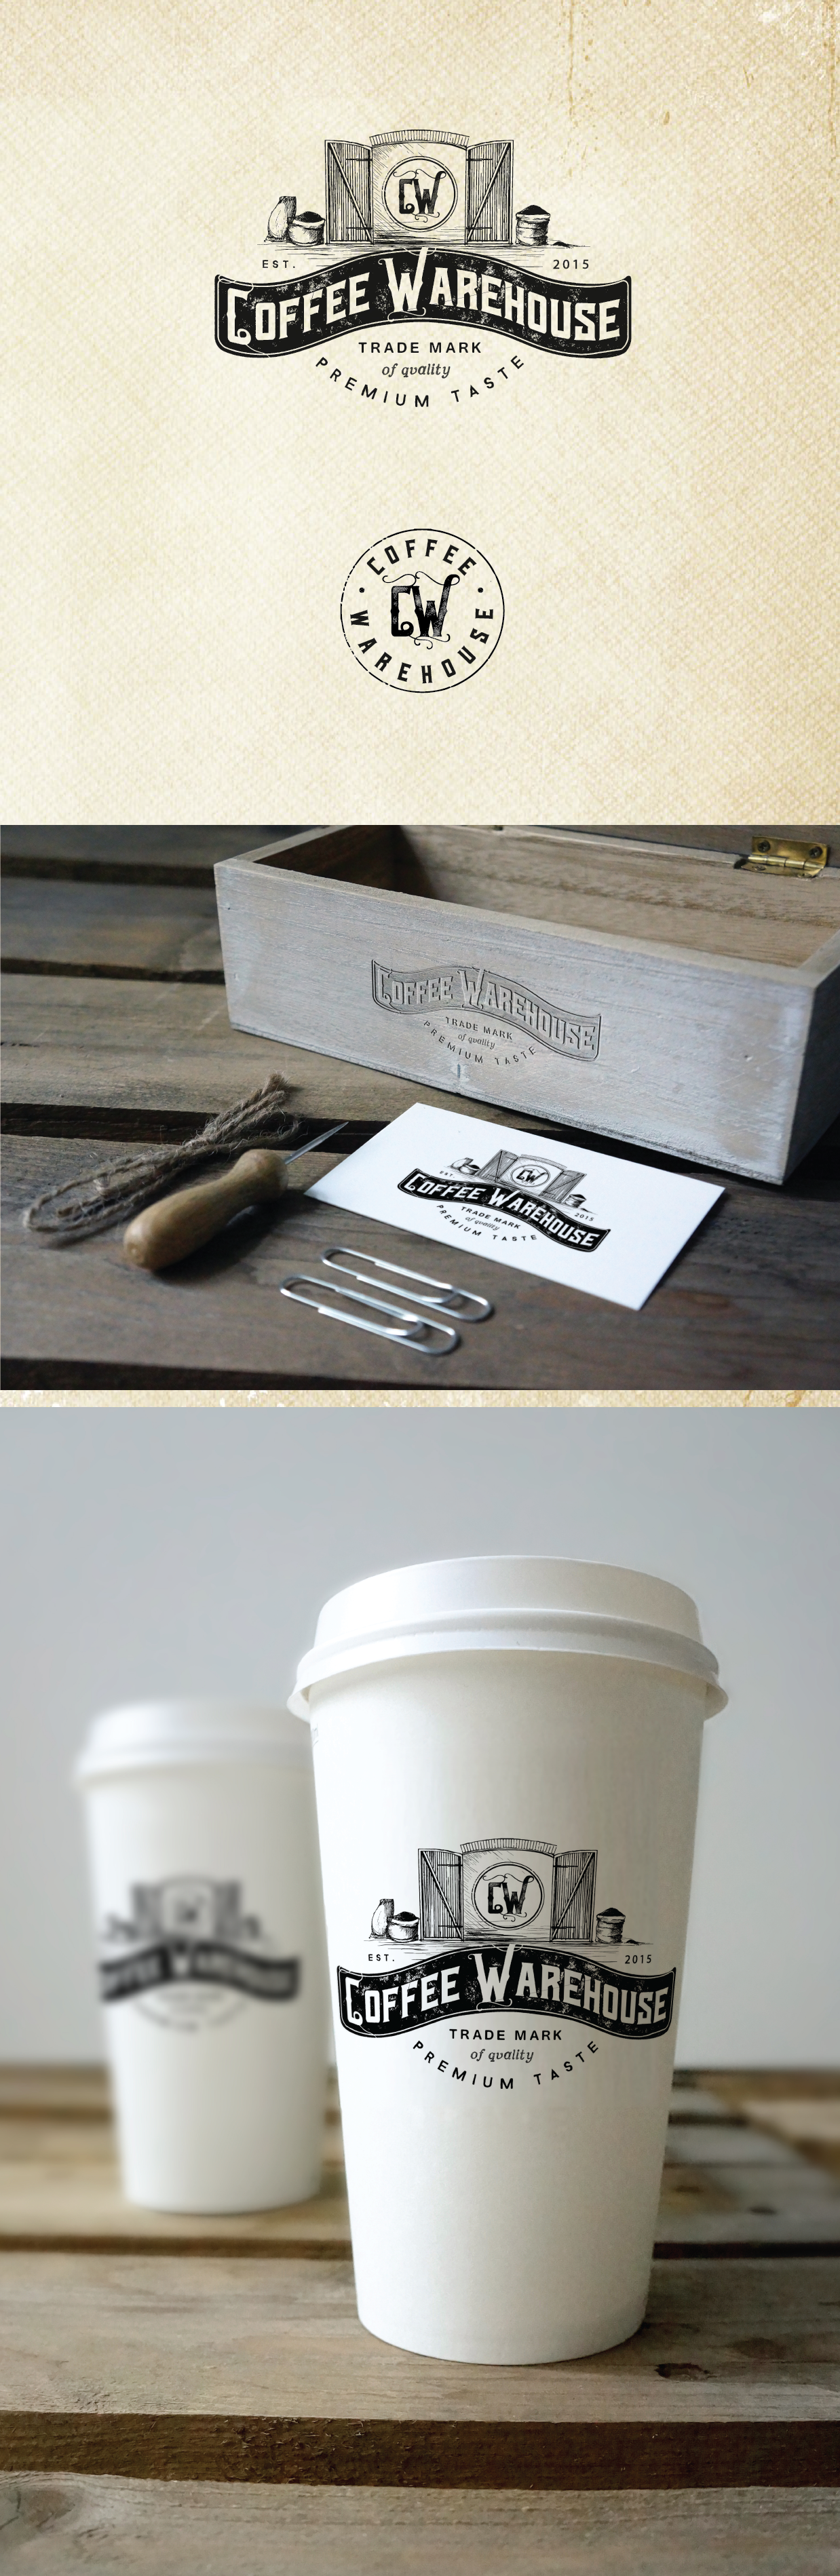 创建一个标志喝咖啡仓库